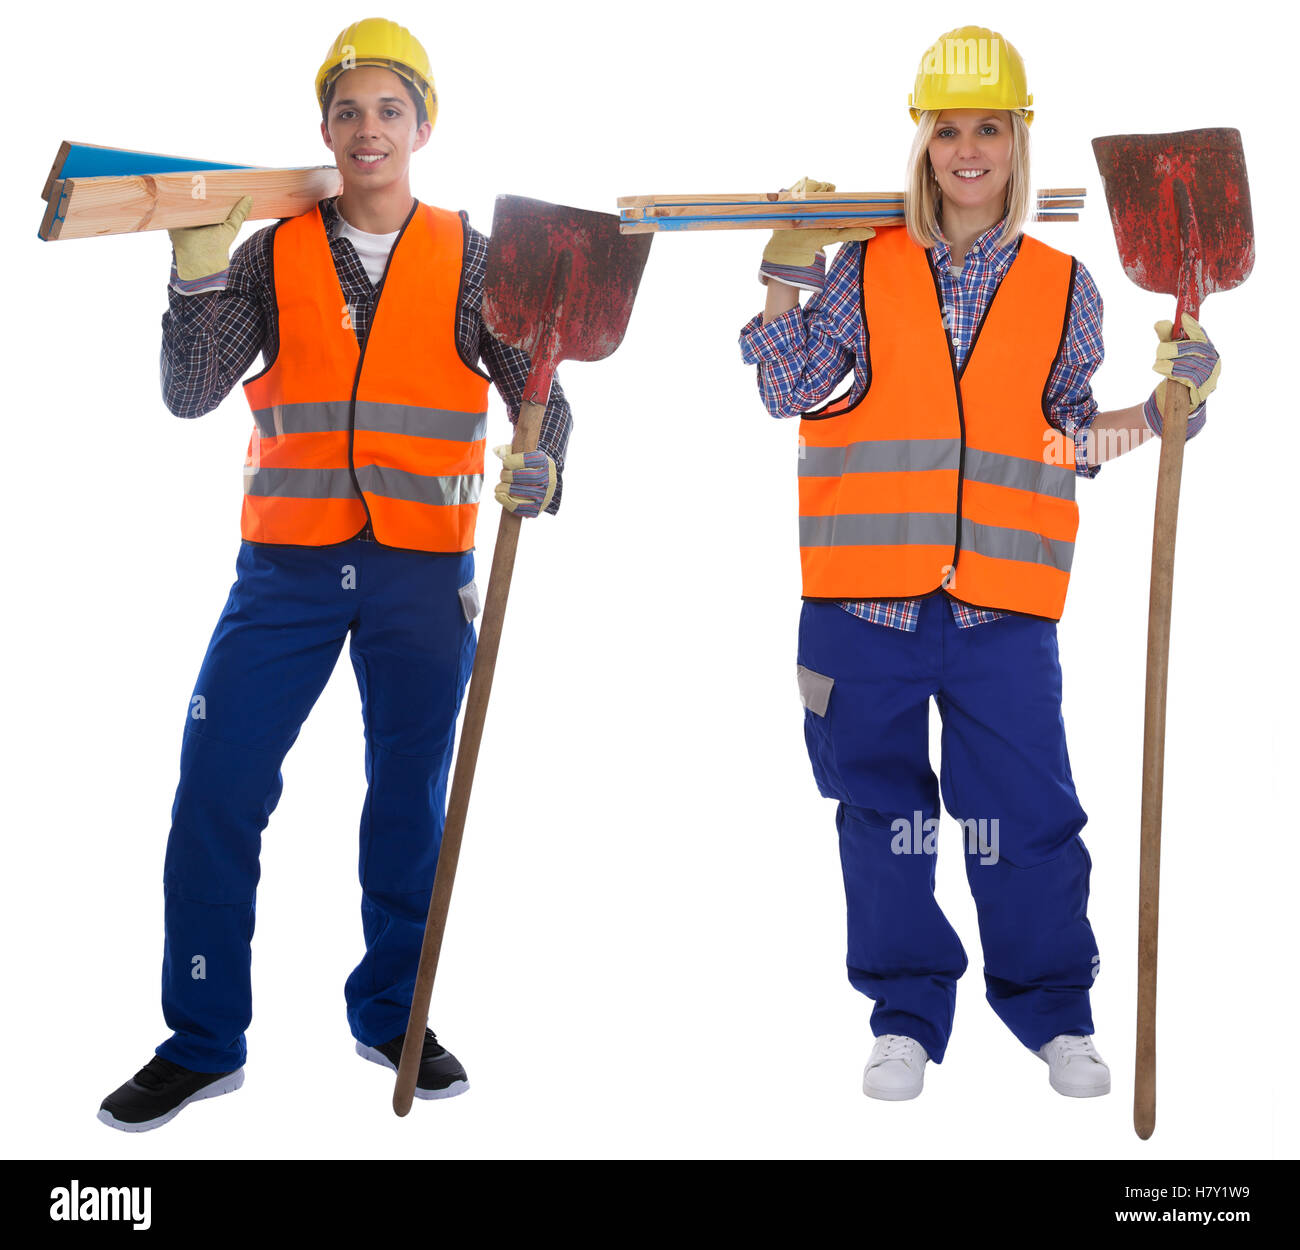 Junge Bauarbeiter job Ganzkörper Portrait isoliert auf weißem Hintergrund Stockfoto